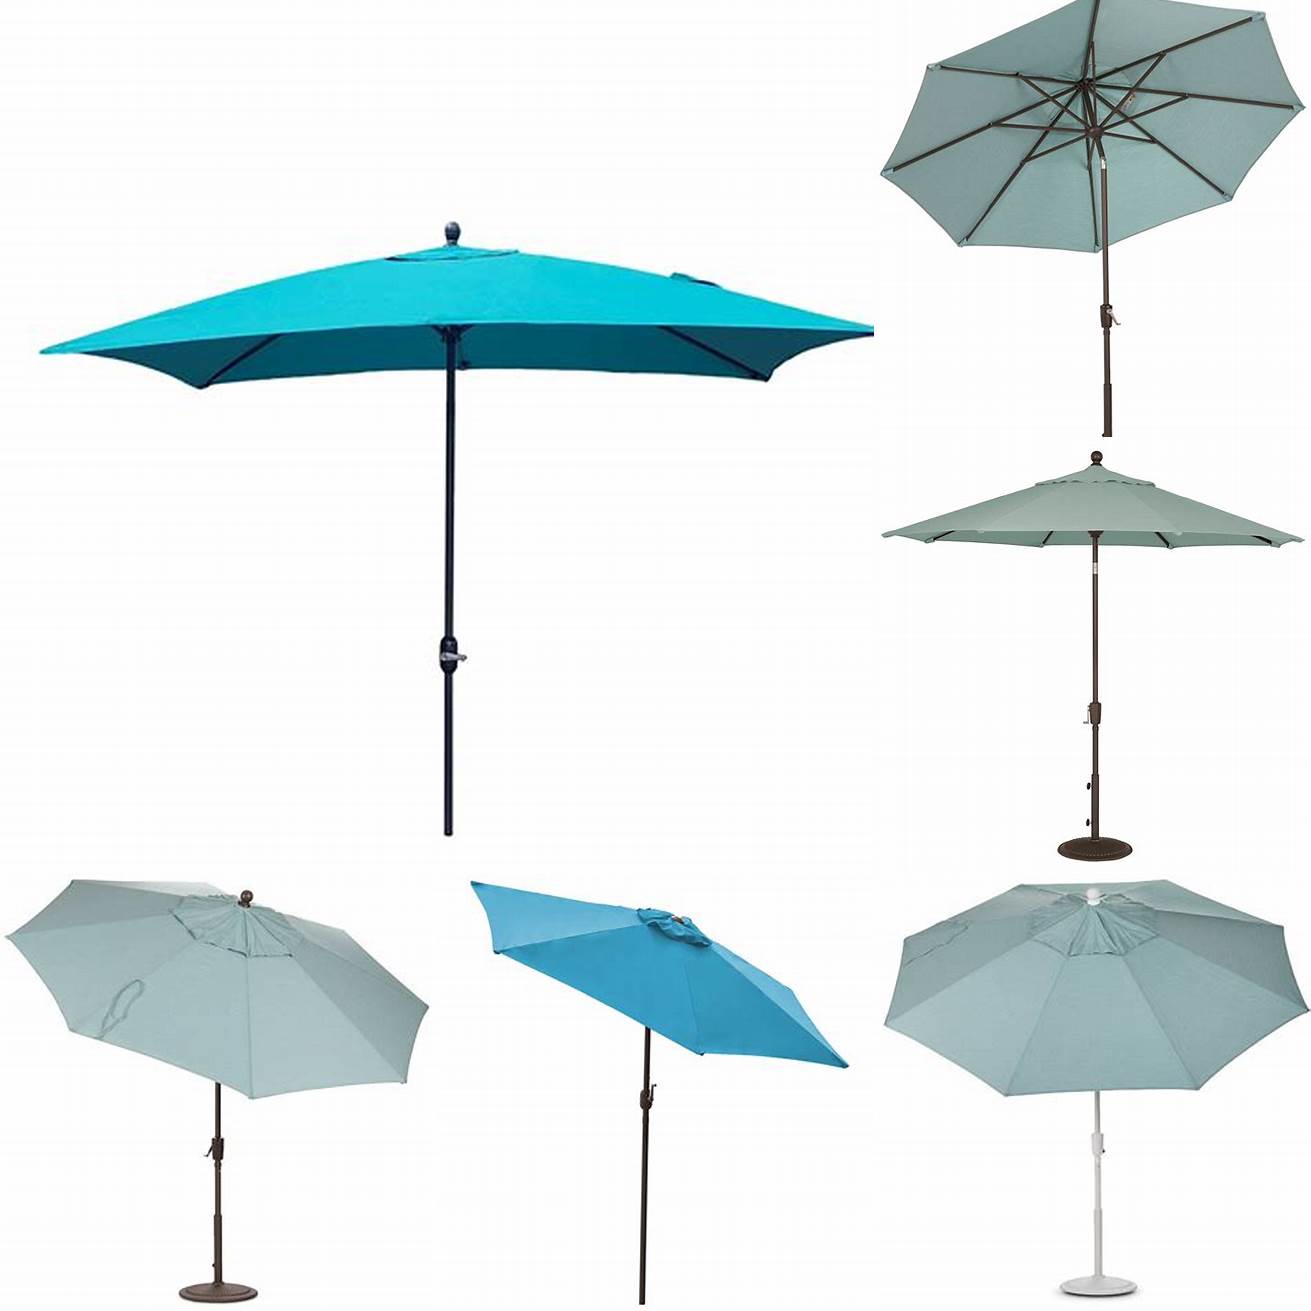 Teal umbrellas